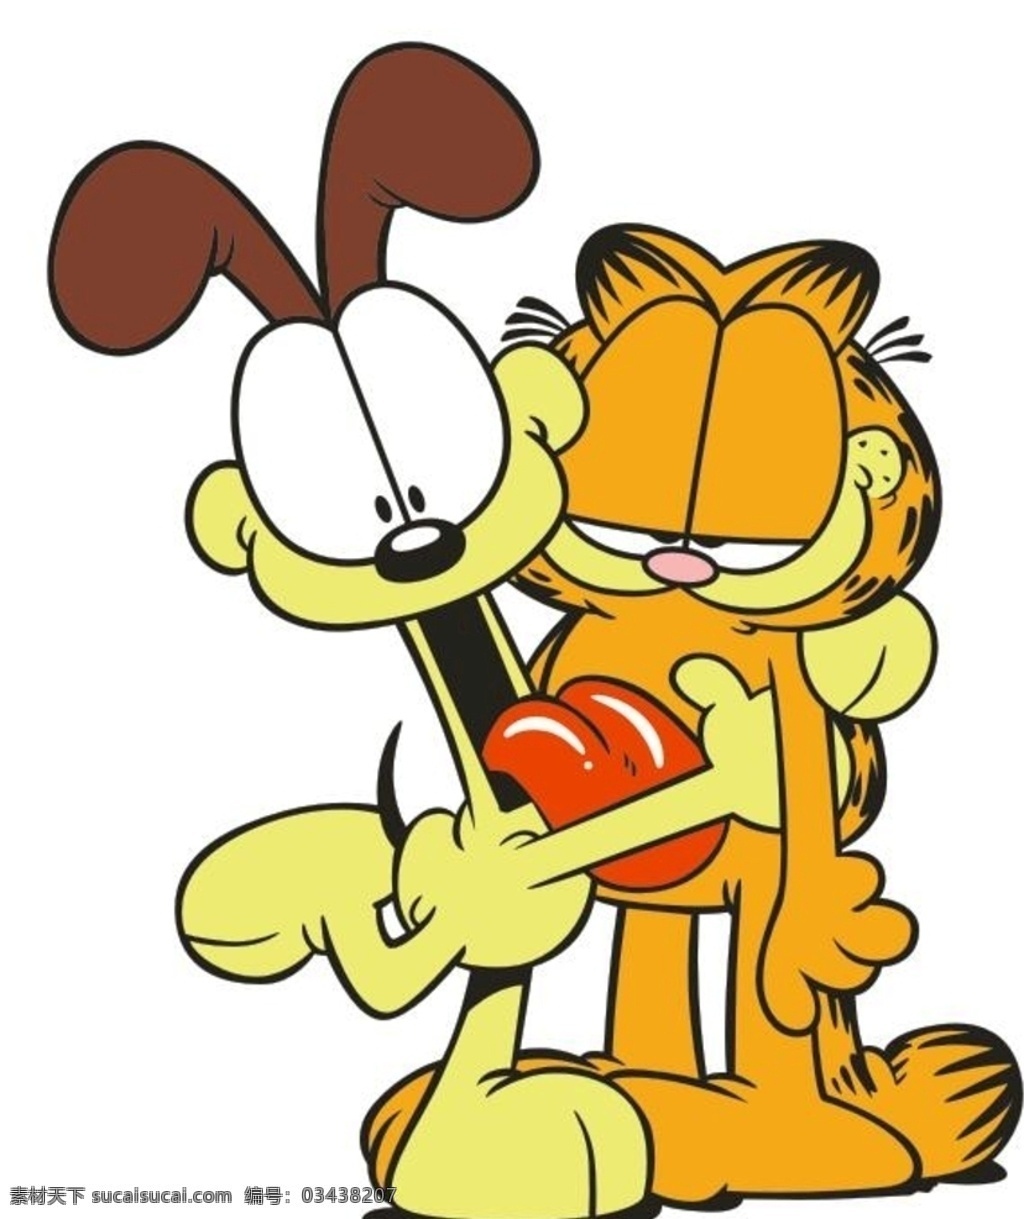 加菲猫和欧迪 卡通 加菲猫 猫咪 小狗欧迪 拥抱 可爱 动漫动画 动漫人物